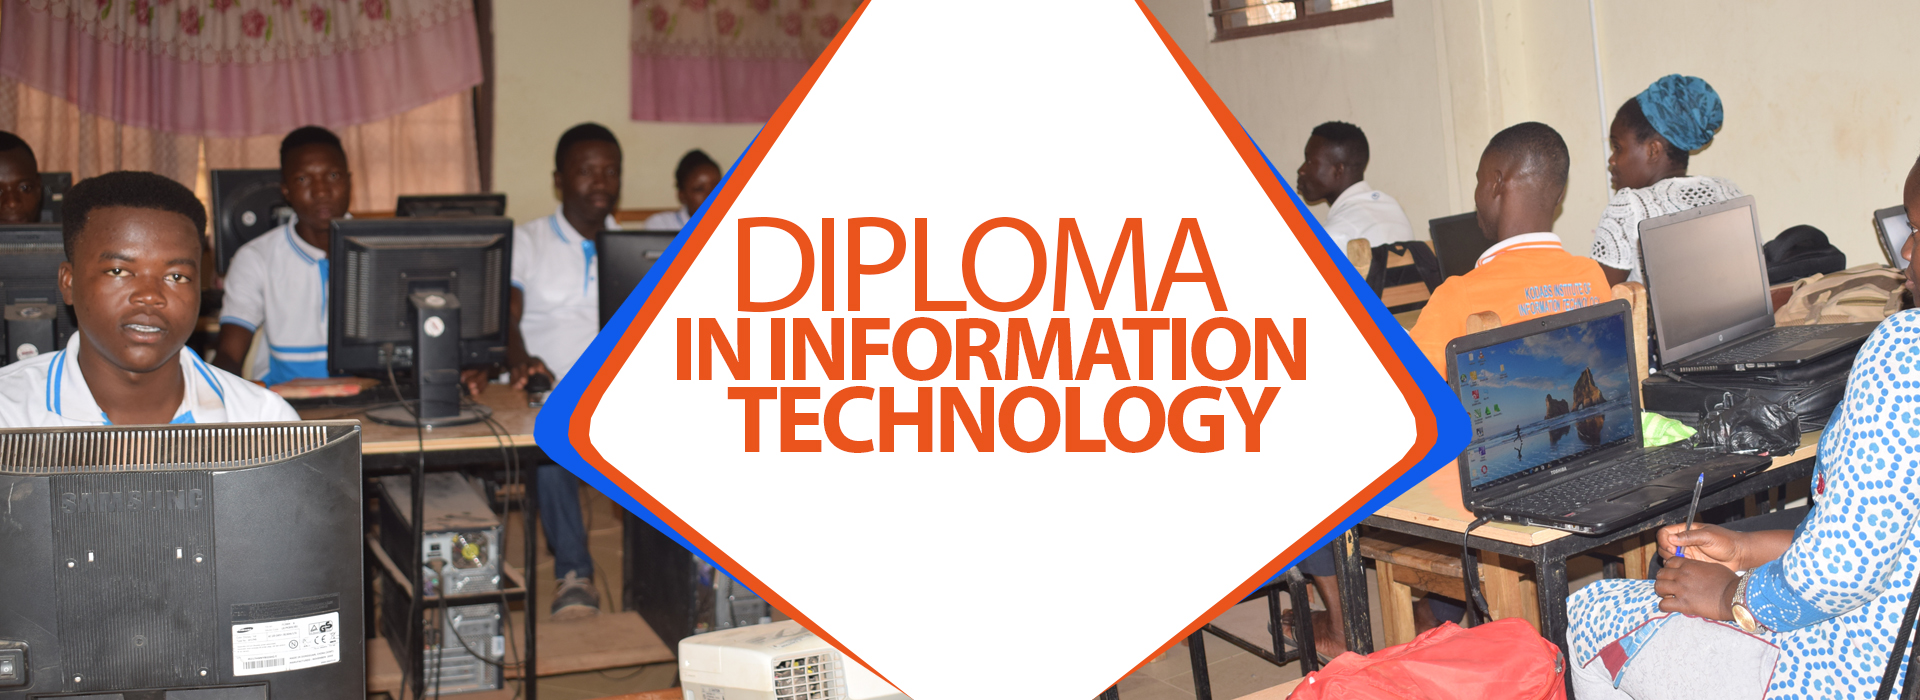 Diploma_at_KIIT